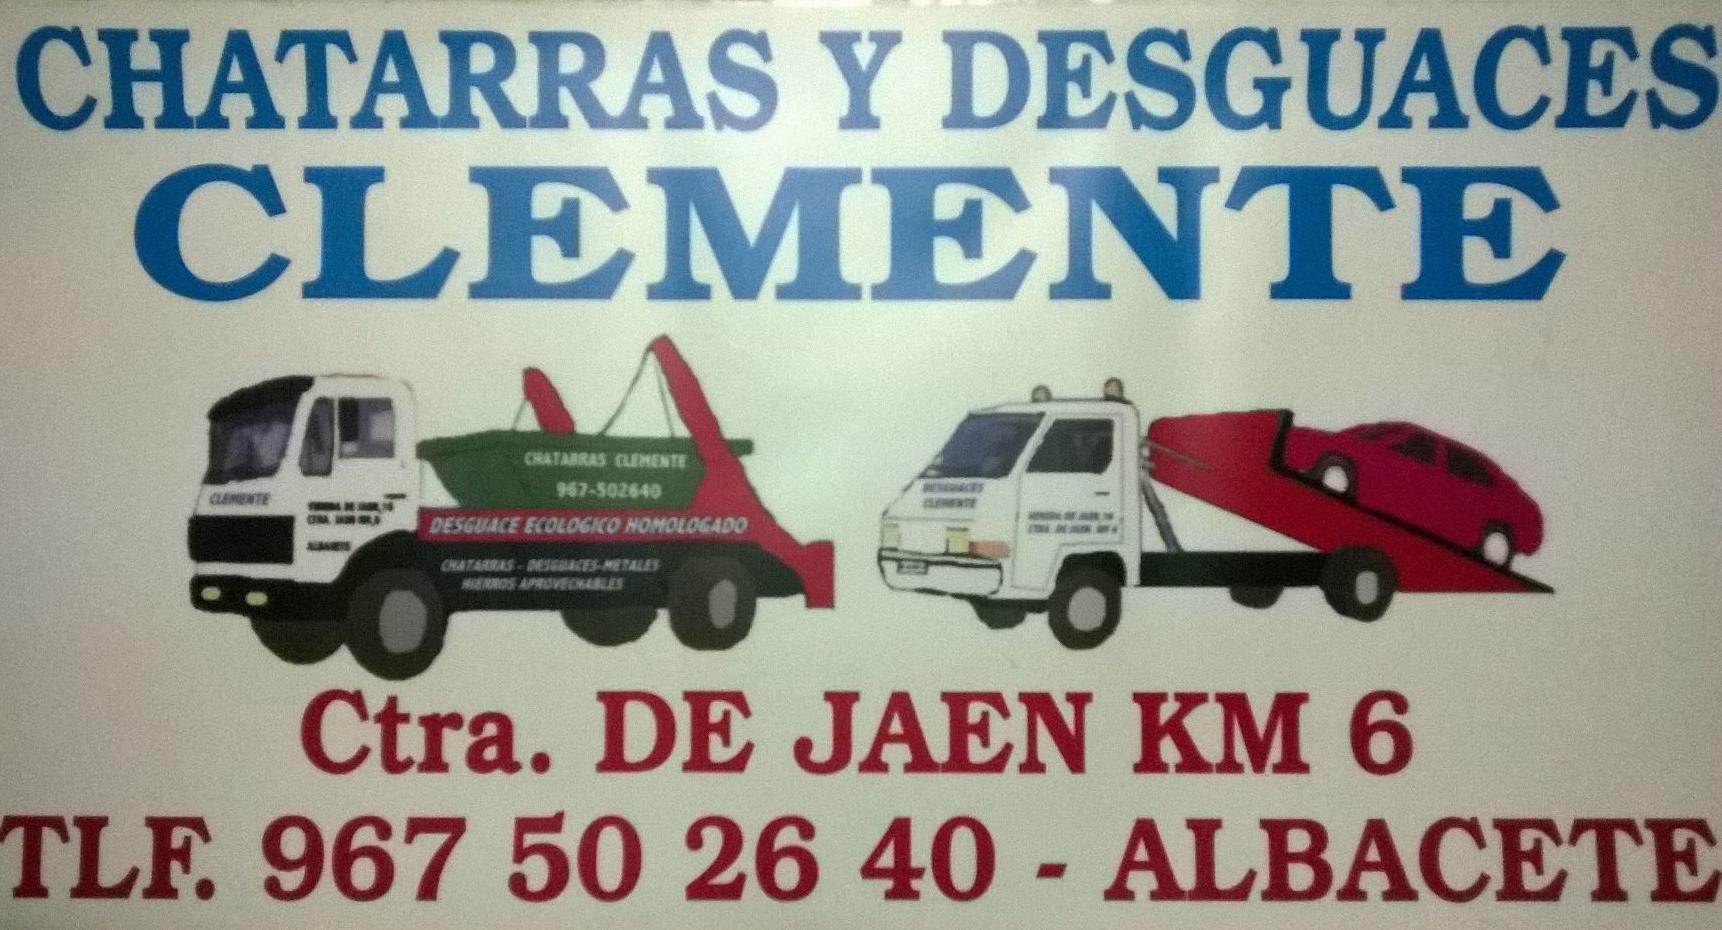 Chatarras Clemente, Desguaces Clemente. Albacete. Logotipo